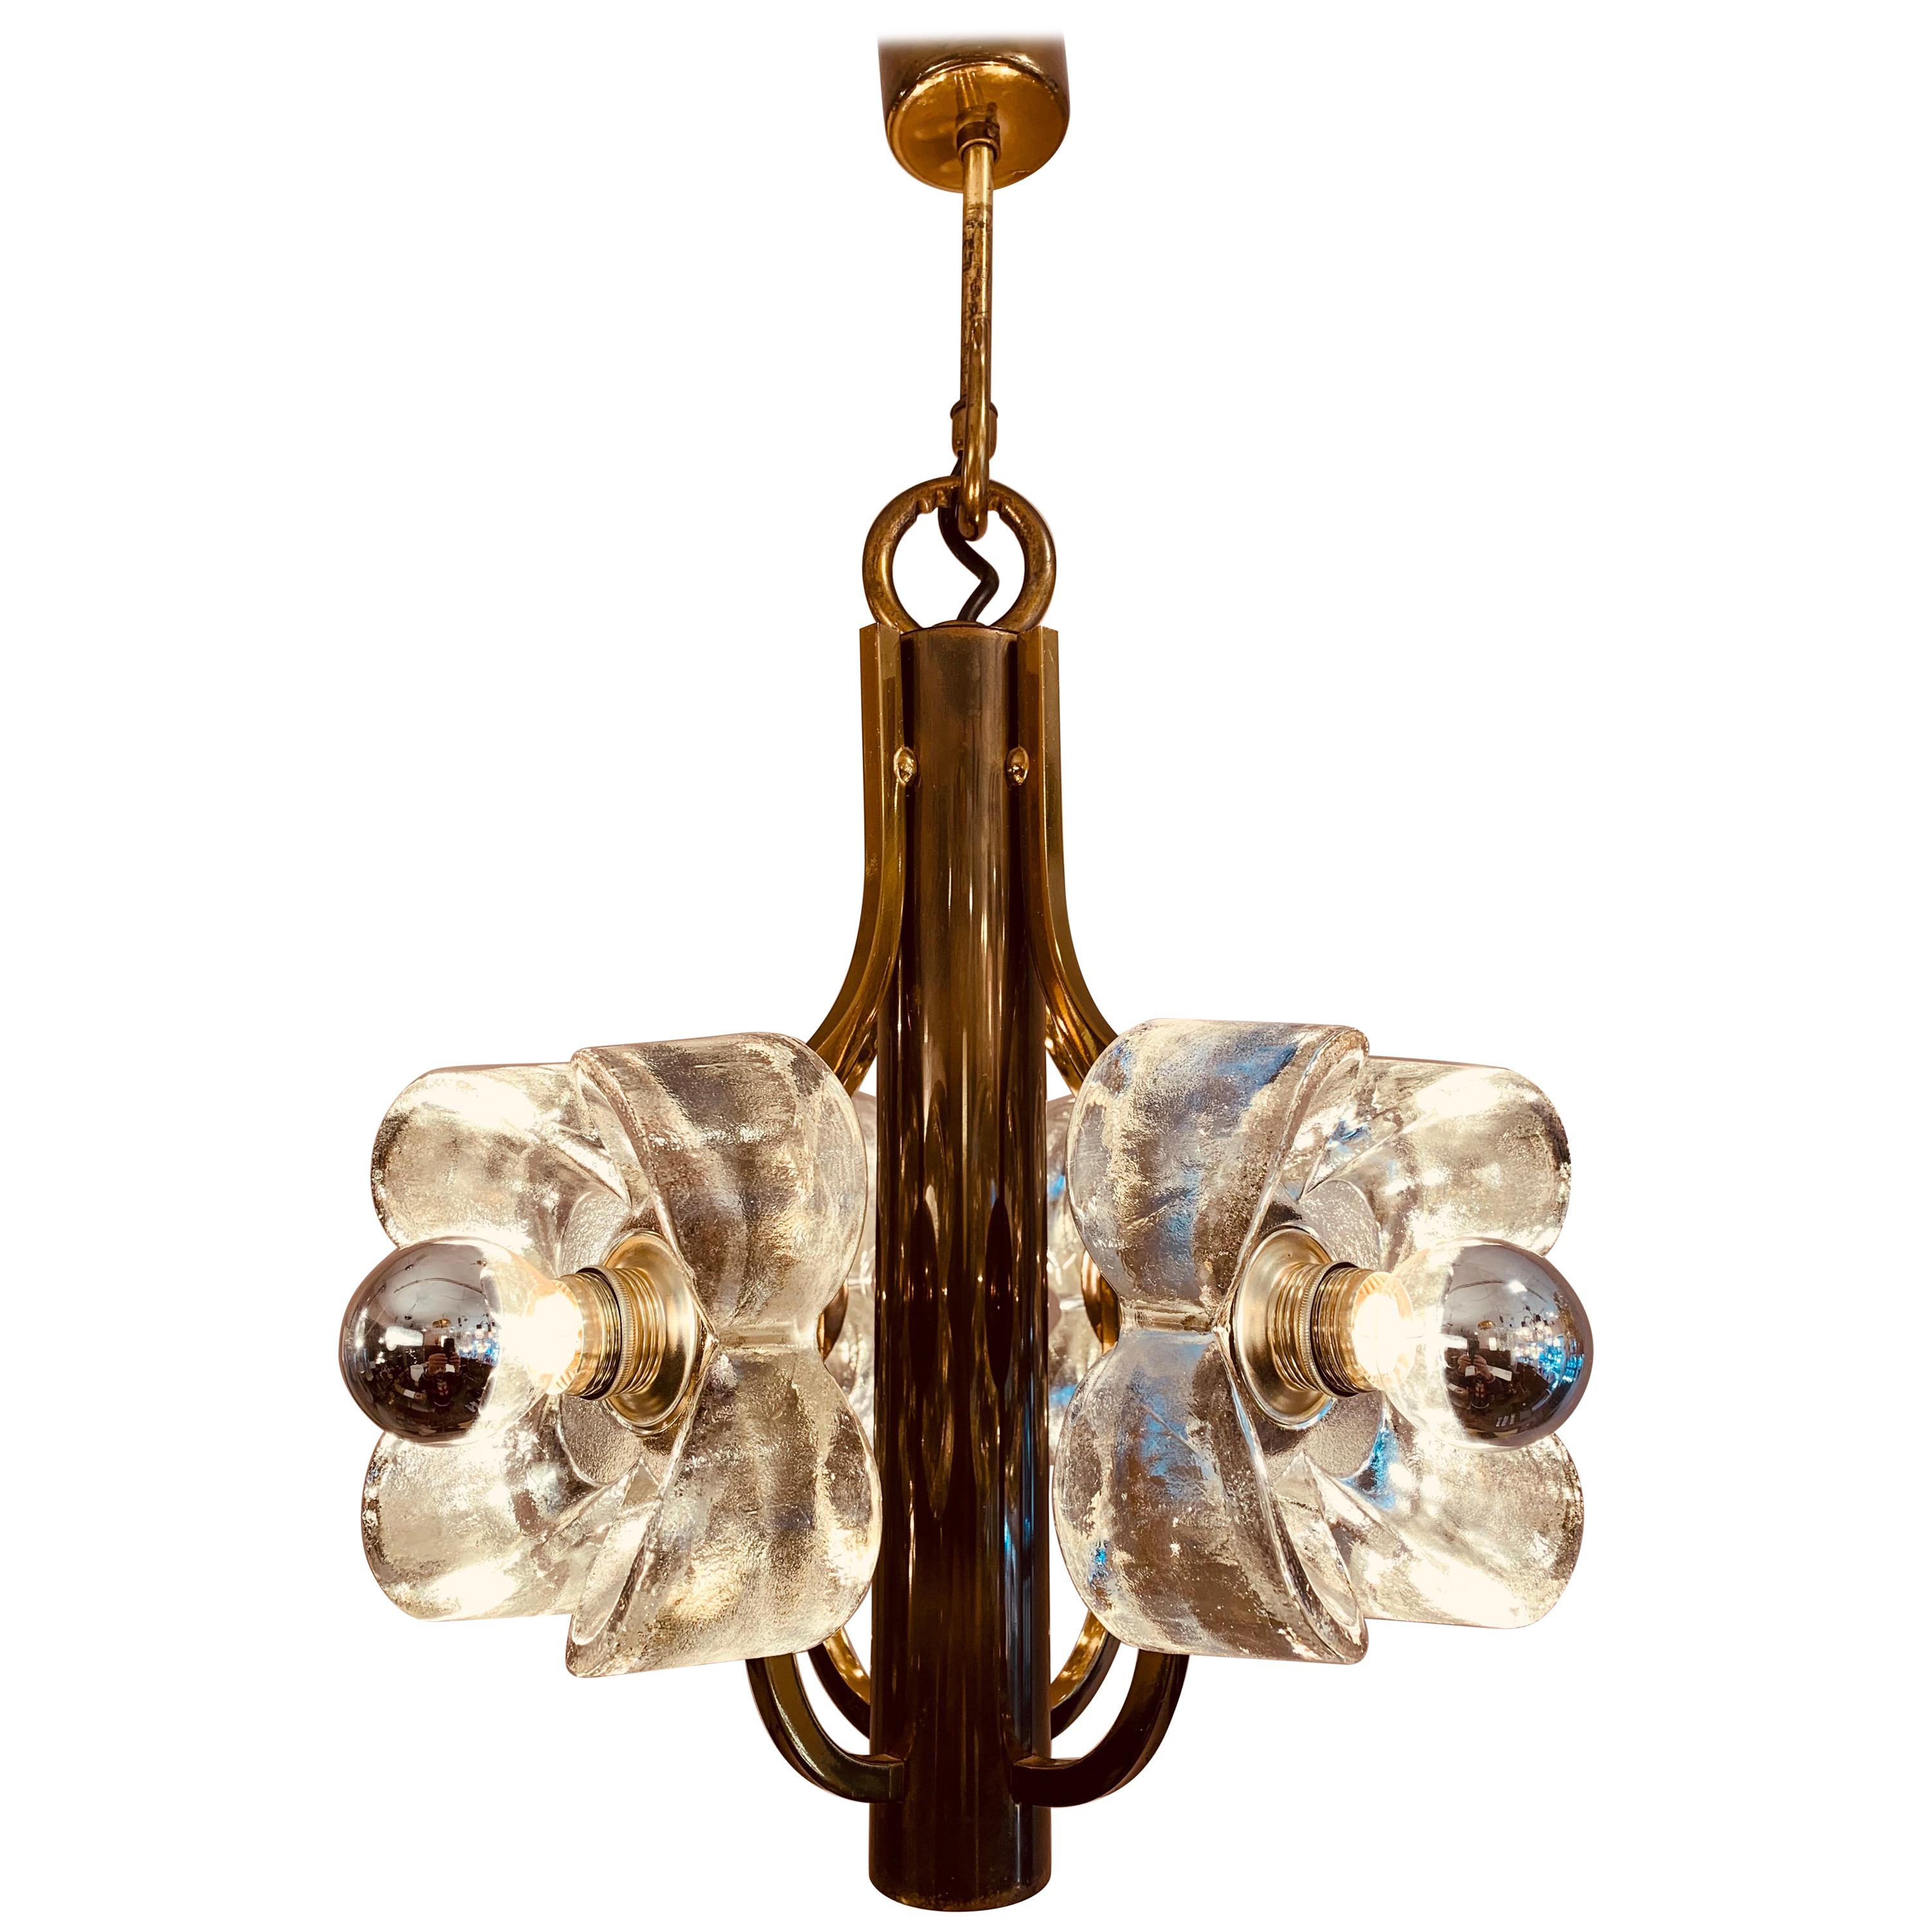 1960s Austrian Sische Brass and Glass Flower Pendant Hanging Ceiling Light